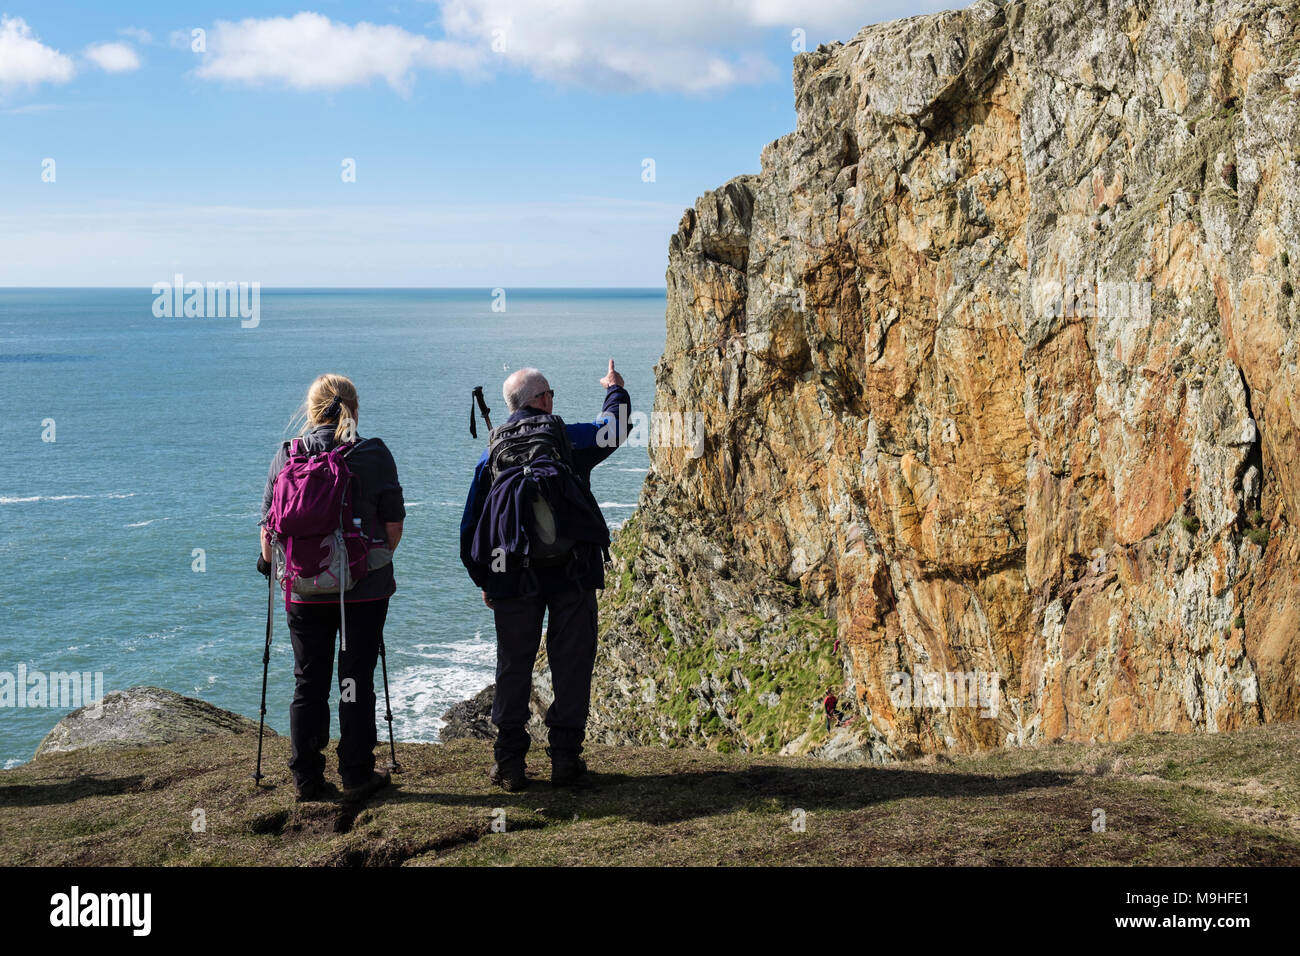 Zwei Wanderer, Kletterer auf Klippen an rhoscolyn Kopf suchen. Rhoscolyn, Holy Island, Isle of Anglesey, North Wales, UK, Großbritannien Stockfoto